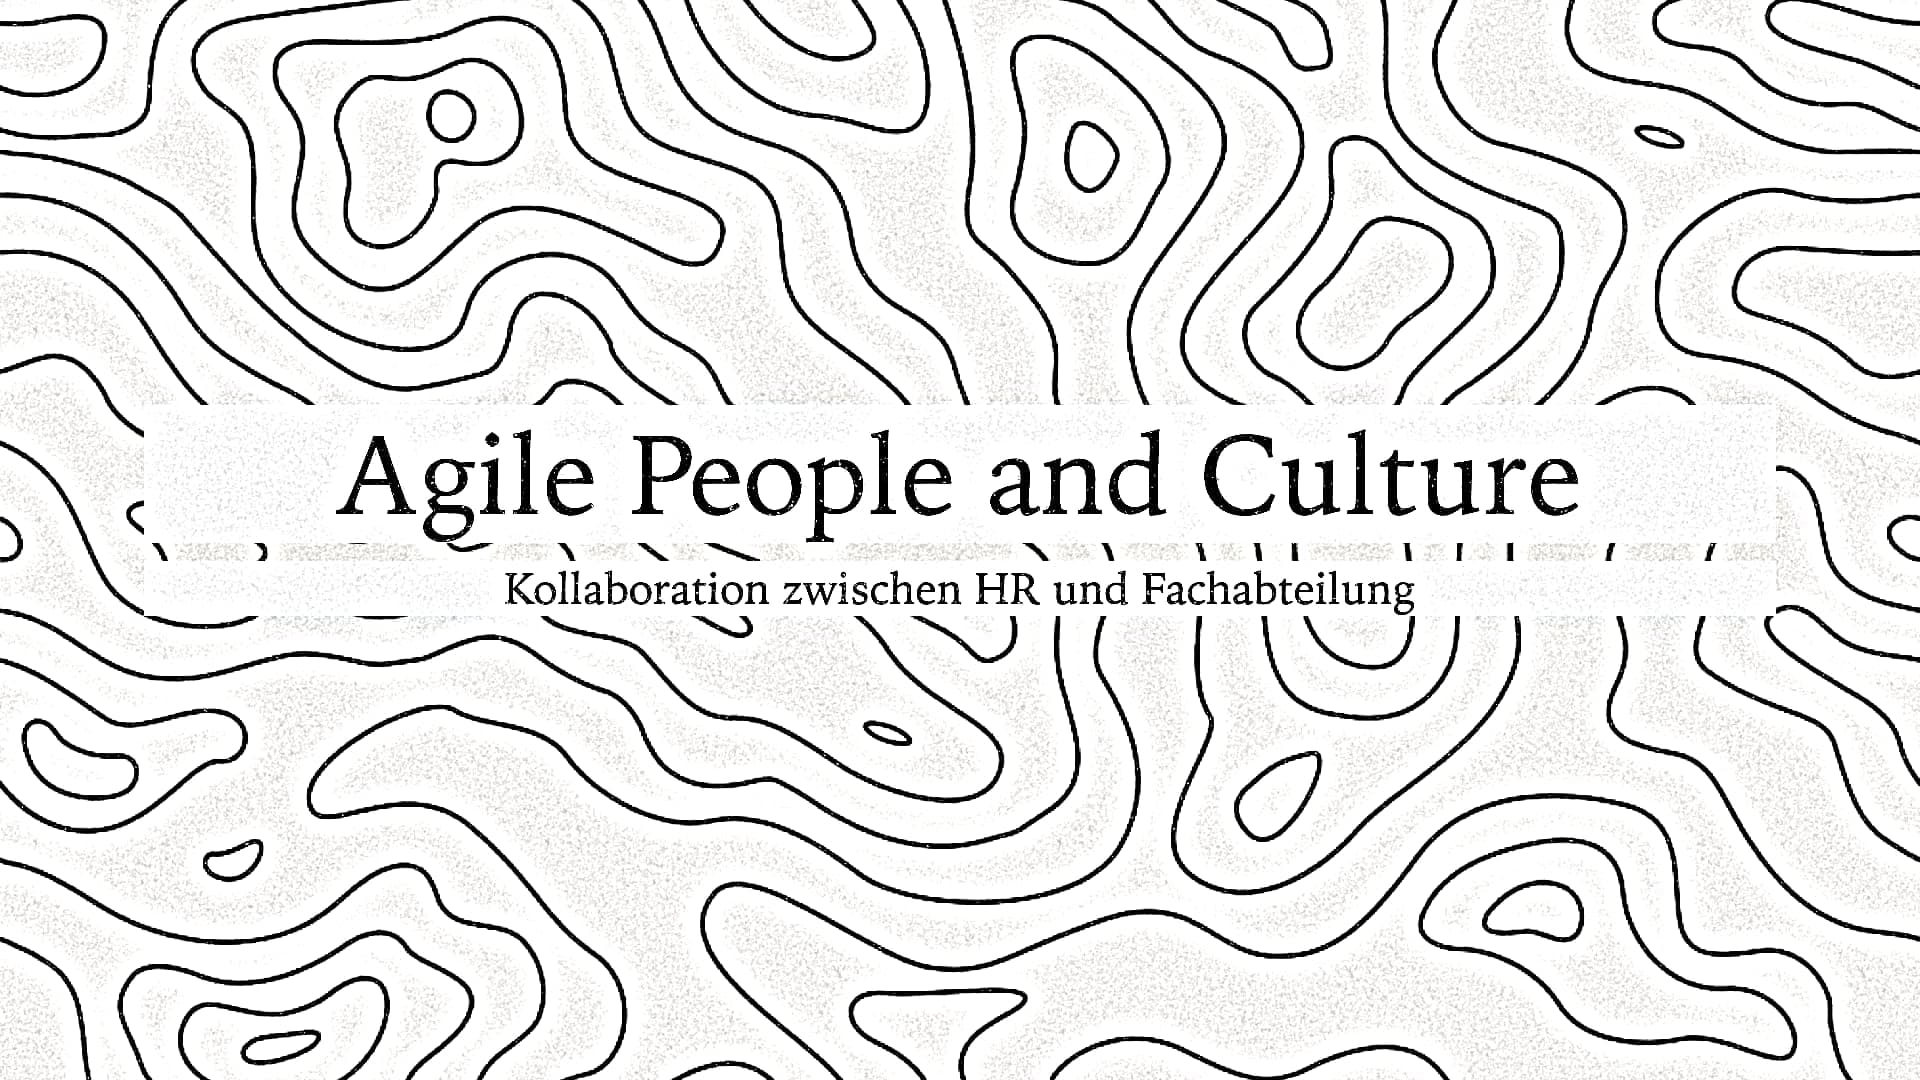 Agile People & Culture zielt auf maximale Kollaborationsfähigkeit ab. Kollaboration entsteht aus ständiger Investition in gemeinsame Zeit, um Vertrauen, Respekt und Sicherheit zu stärken.